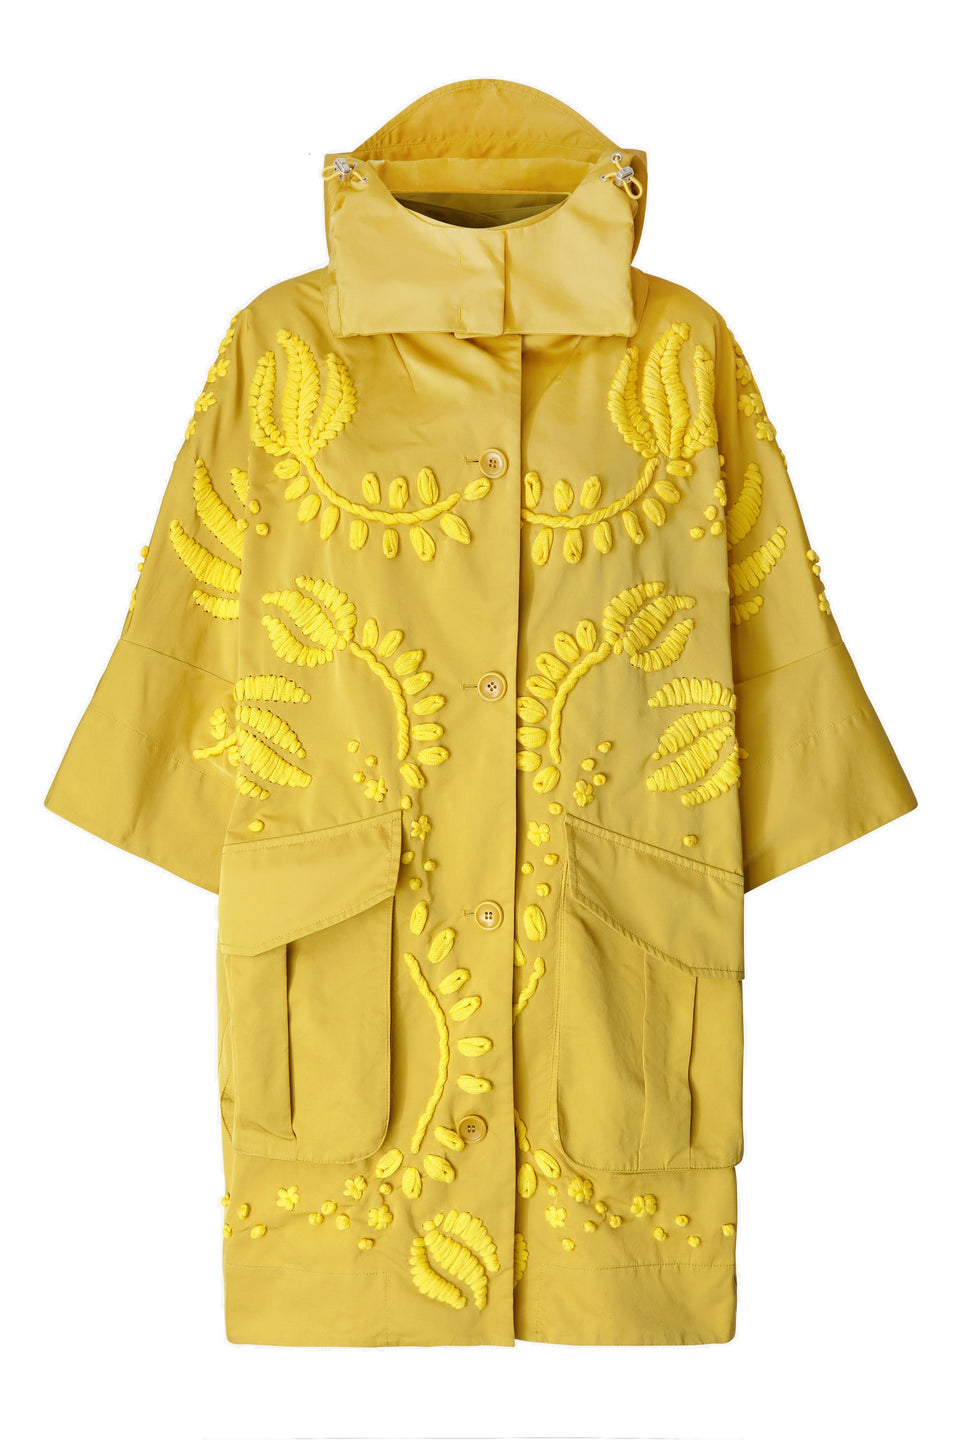 Coat in yellow fabric